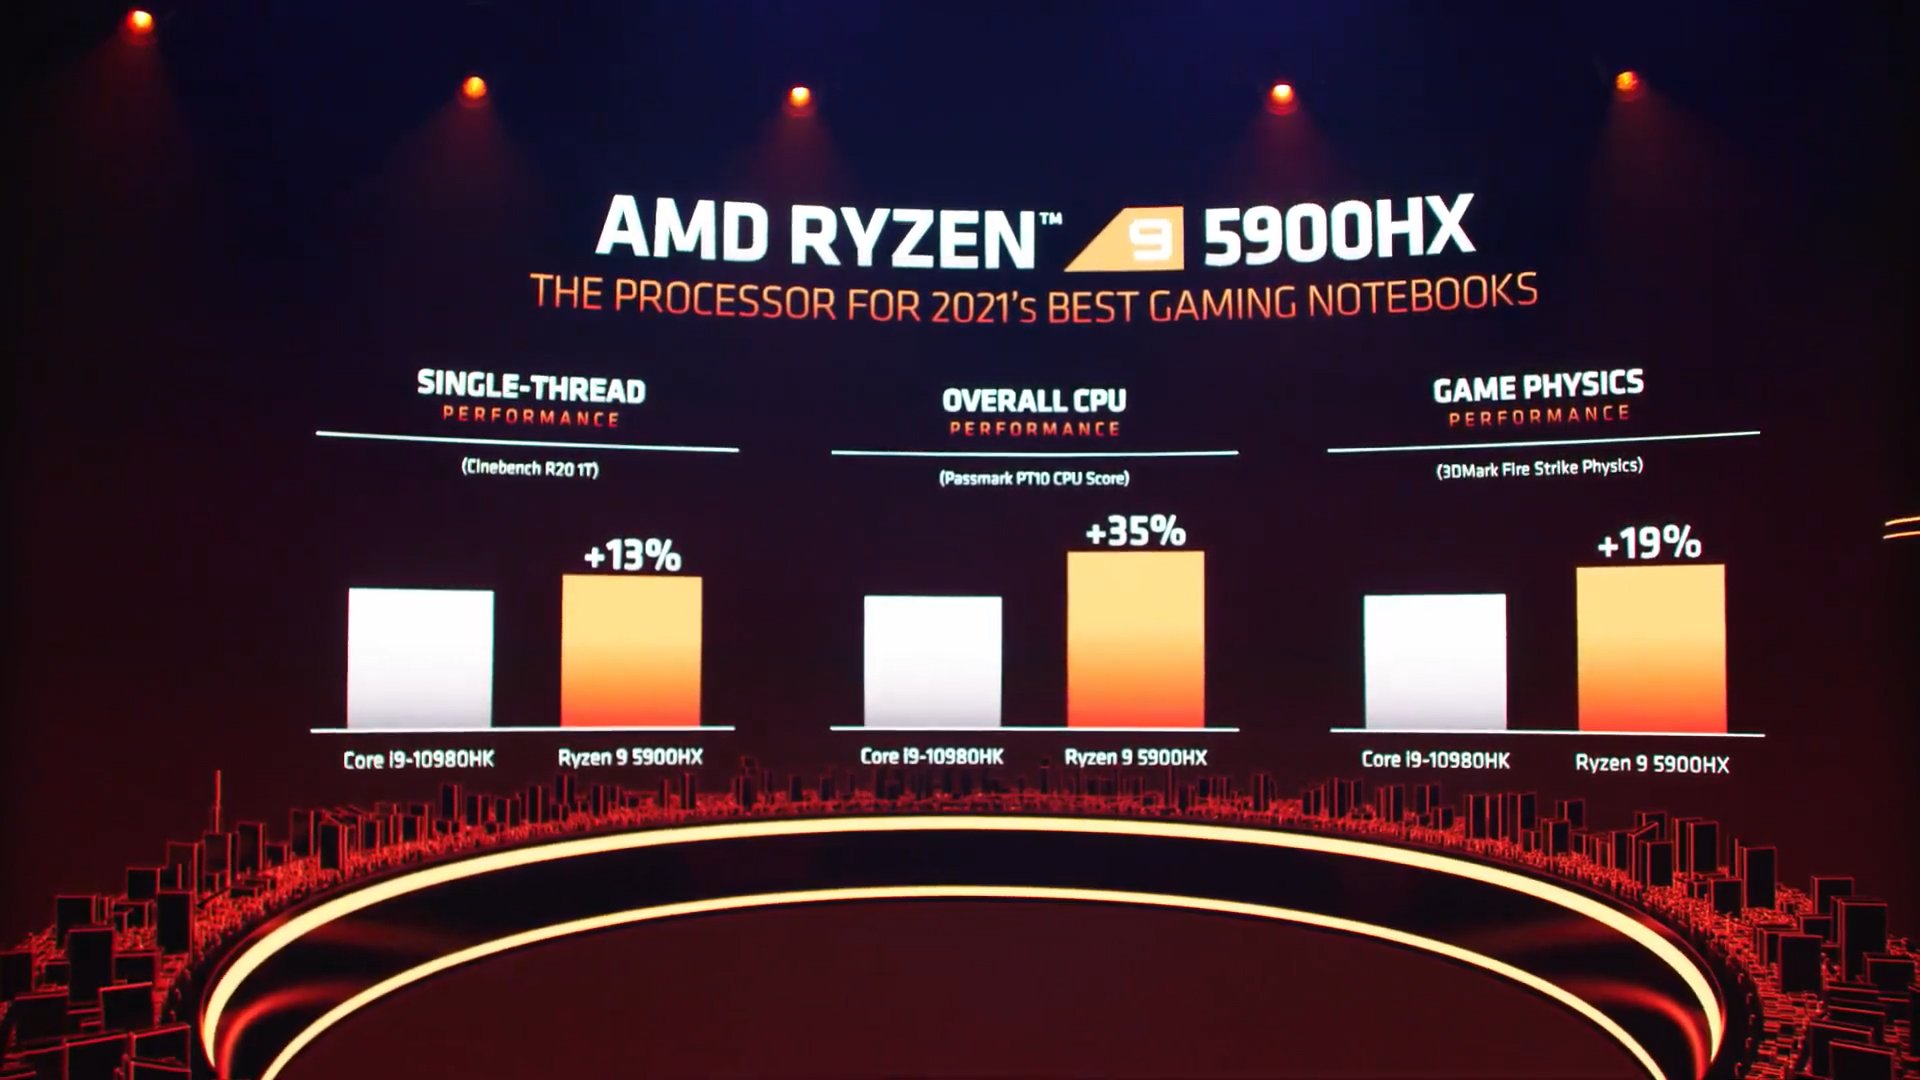 #CES21 - AMD RYZEN 5000 MOBILE SERIES VỚI HIỆU NĂNG VƯỢT TRỘI